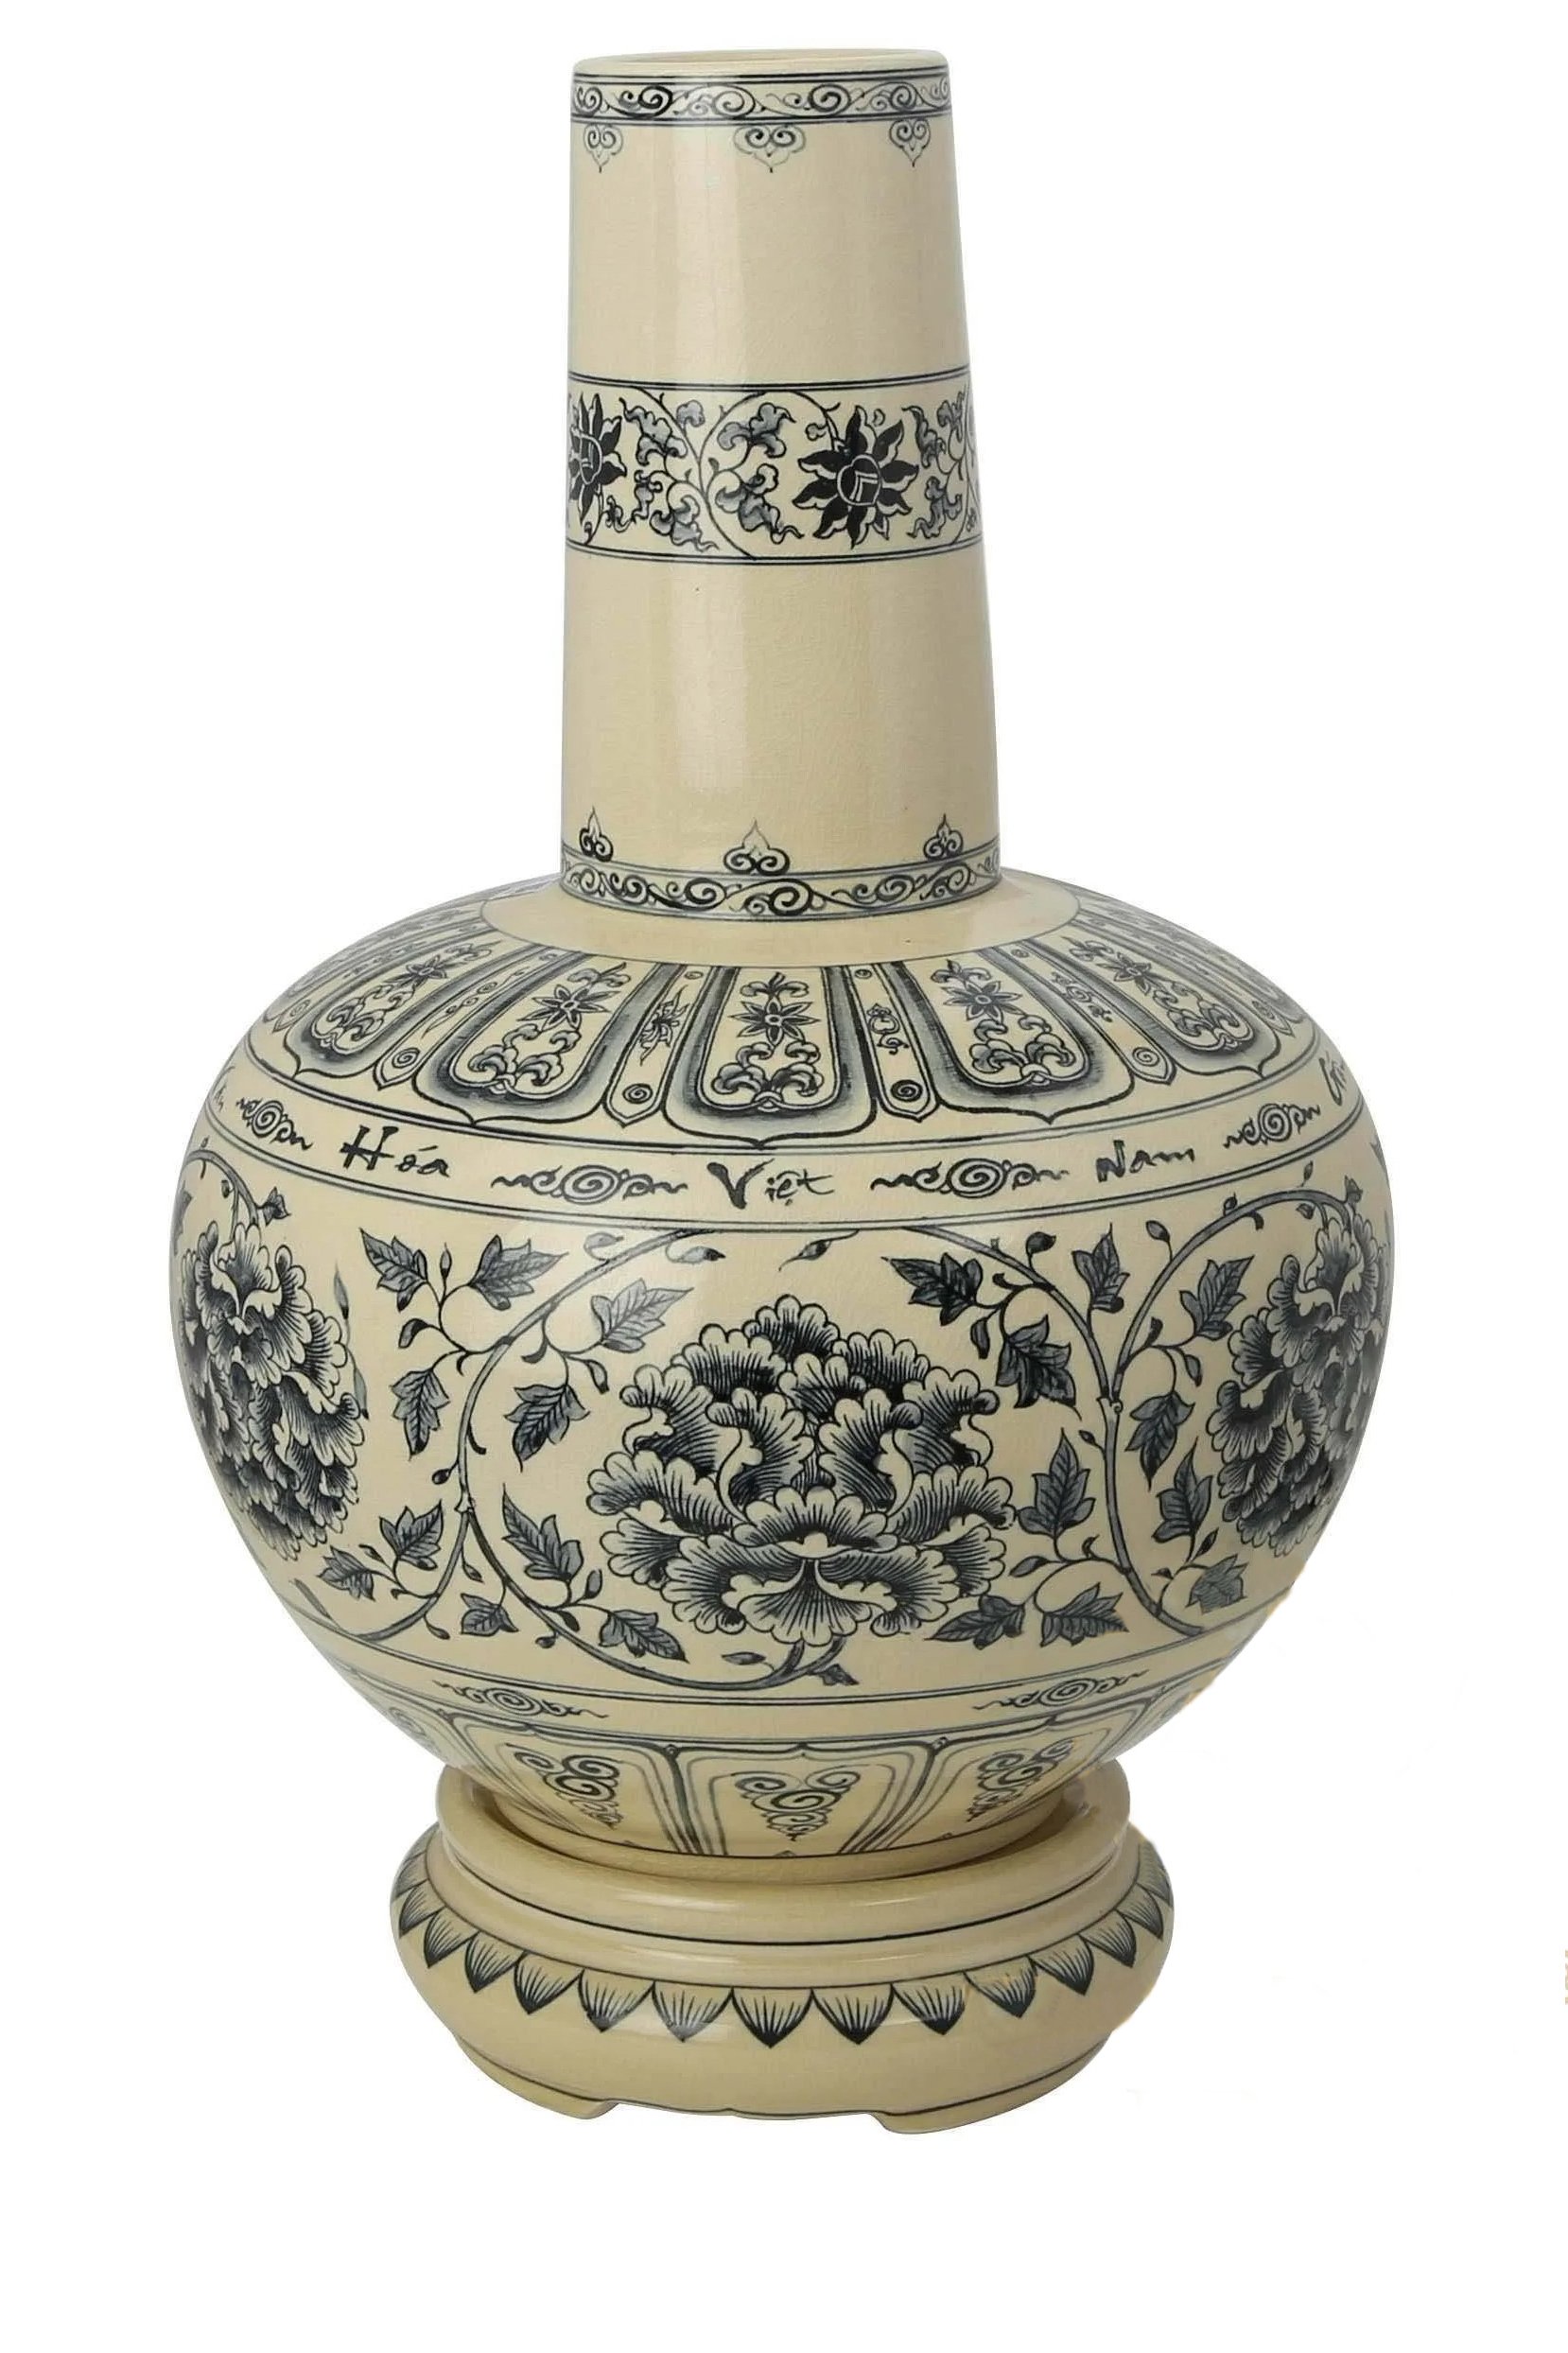 Bình hoa lam gốm Chu Đậu mô phỏng theo bình gốm cổ được bảo hiểm hàng triệu đô la tại Bảo tàng quốc gia Tokapi Saray, Istanbul (Thổ Nhĩ Kỳ).